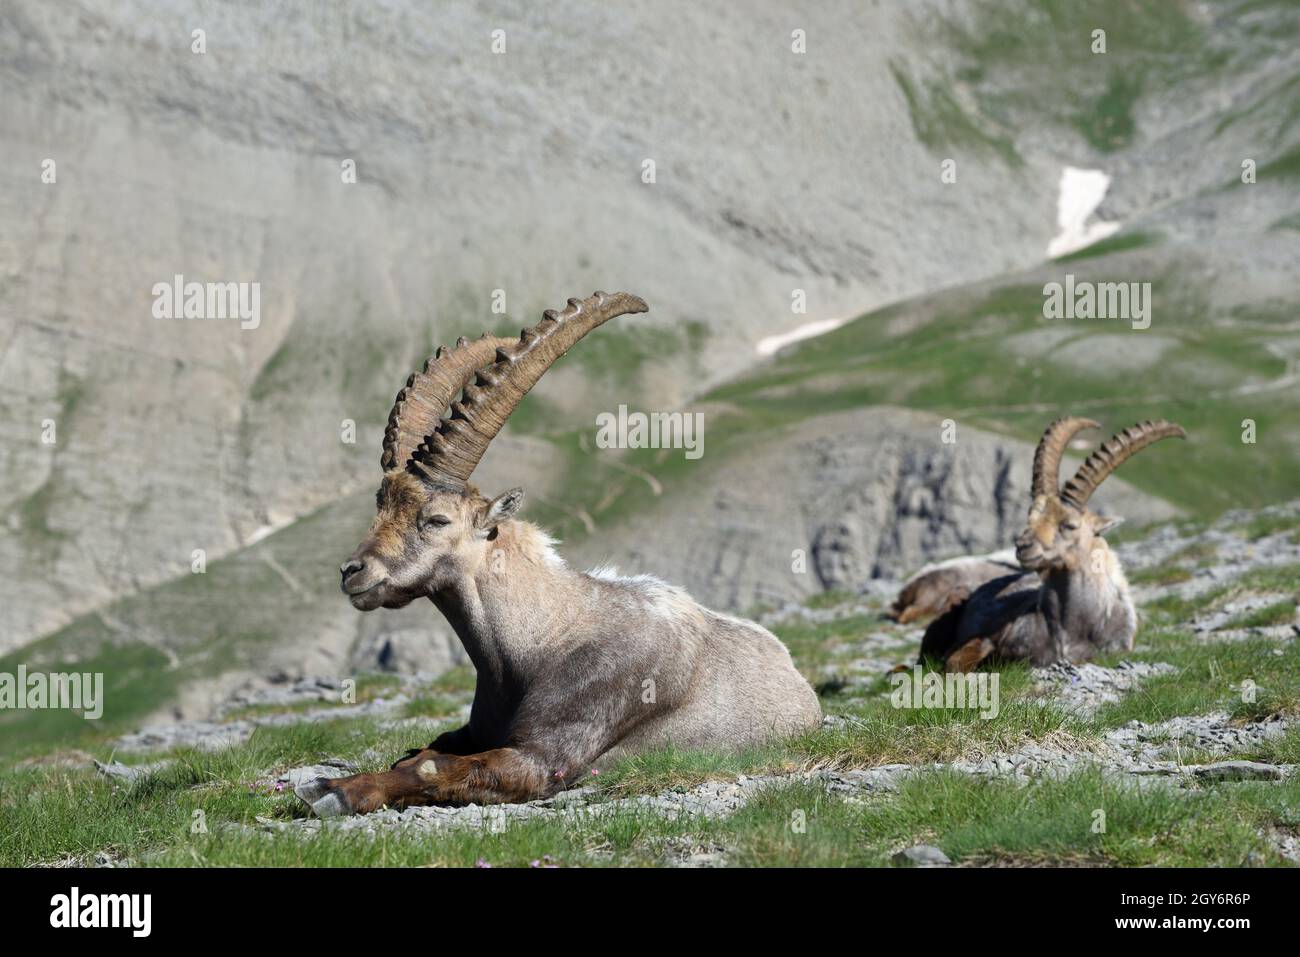 L'Ibex alpin masculin, le Capra Ibex, et le groupe d'ibexes, une forme de Goat sauvage, s'assoient sur des pentes rocheuses dans le parc national du Mercantour dans les Alpes françaises Banque D'Images